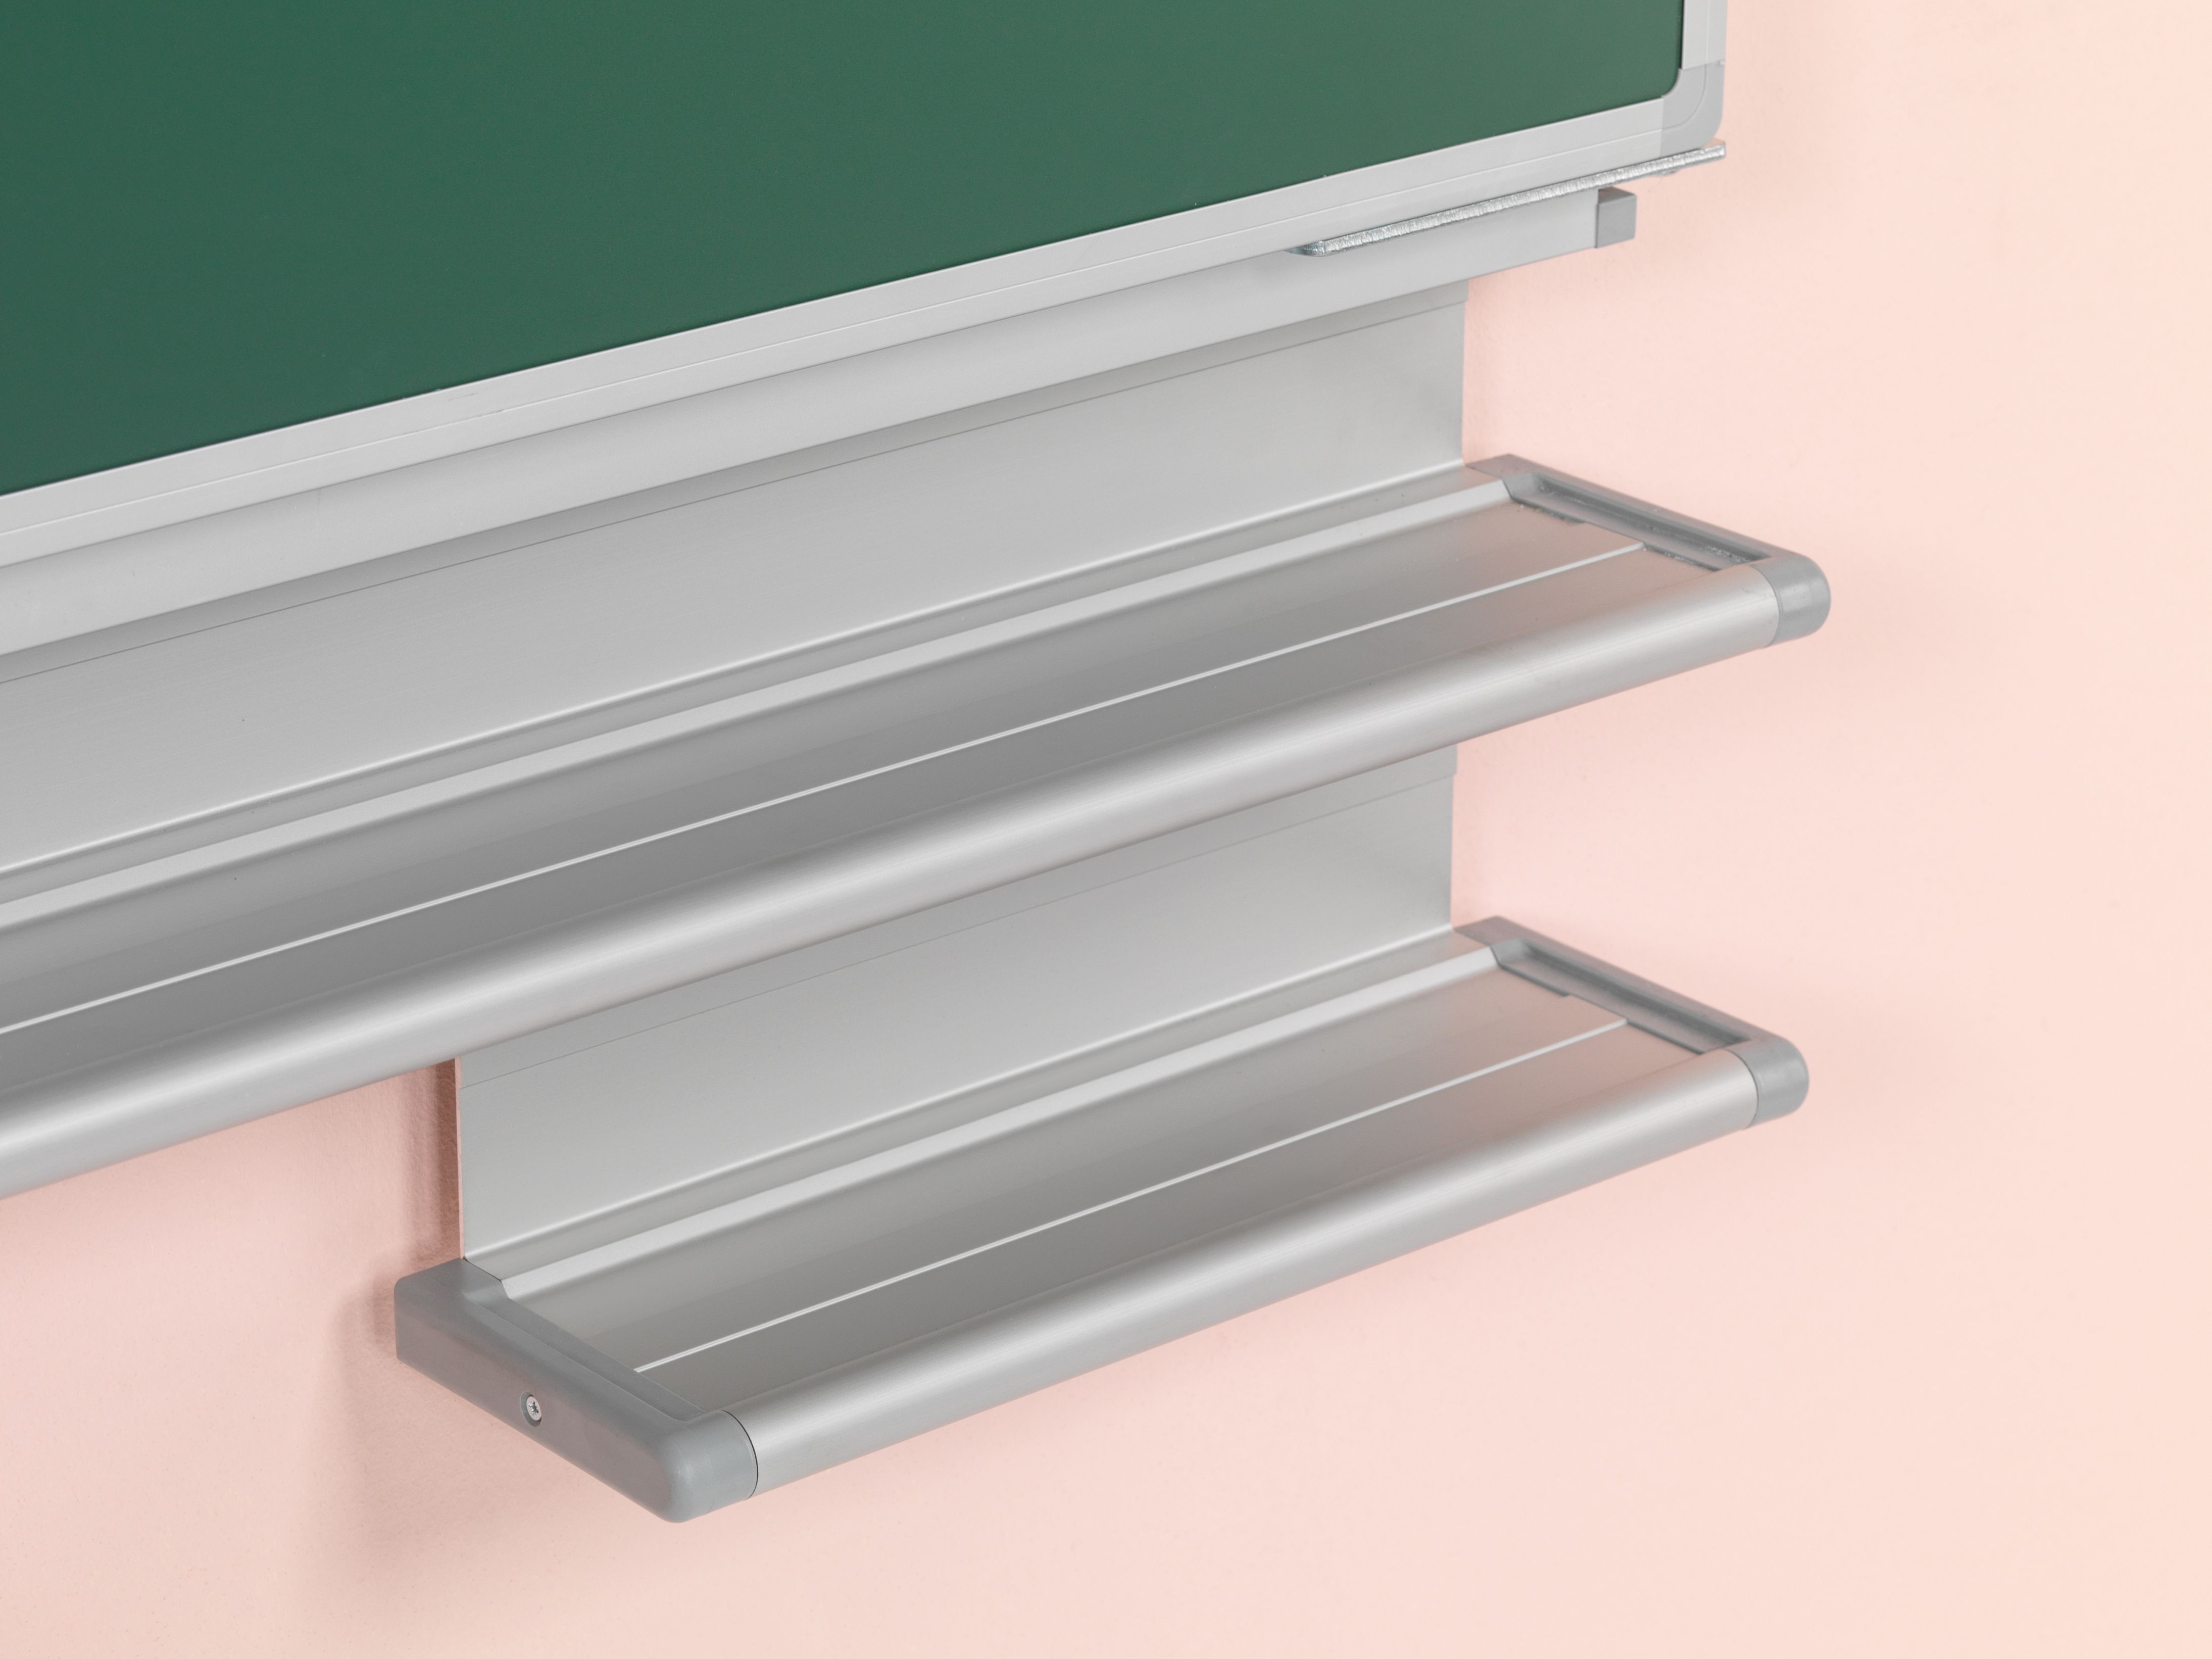 Vijfvlaks schoolbord, wandmontage, krijt groen, Softline 19 mm - 100x200 cm